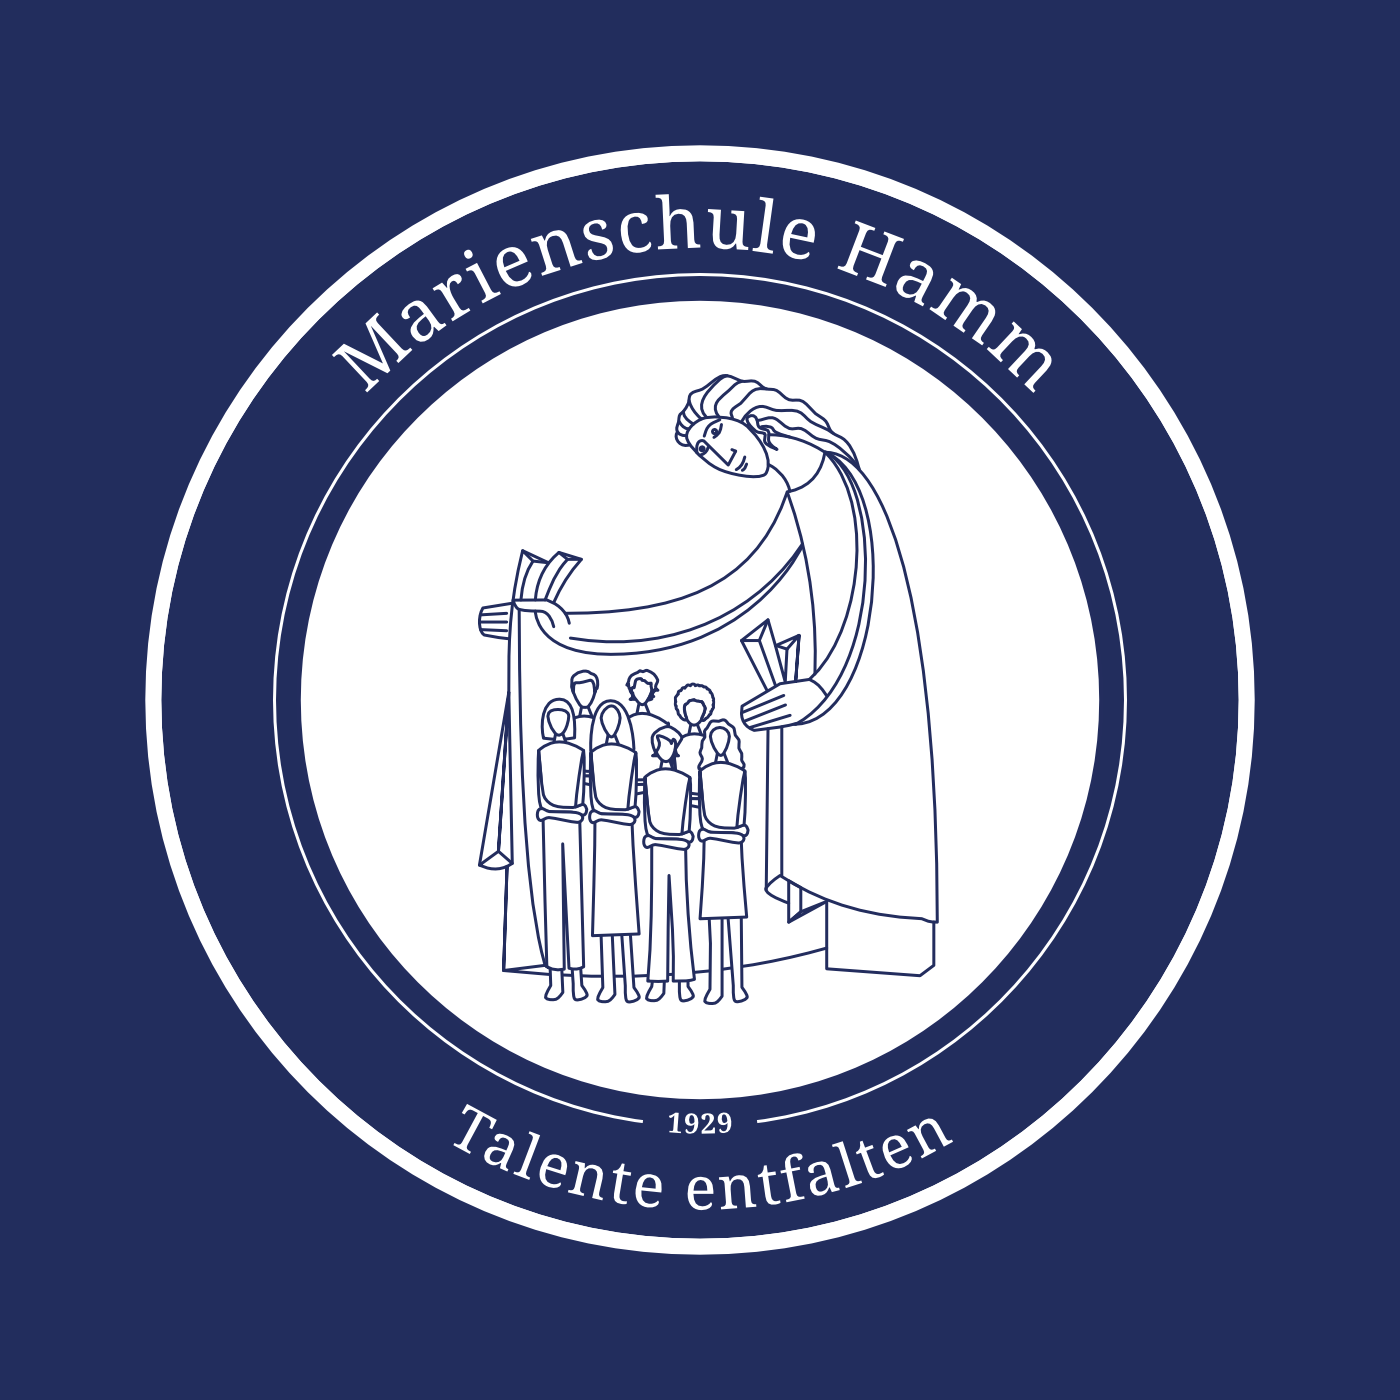 (c) Marienschule-hamm.de